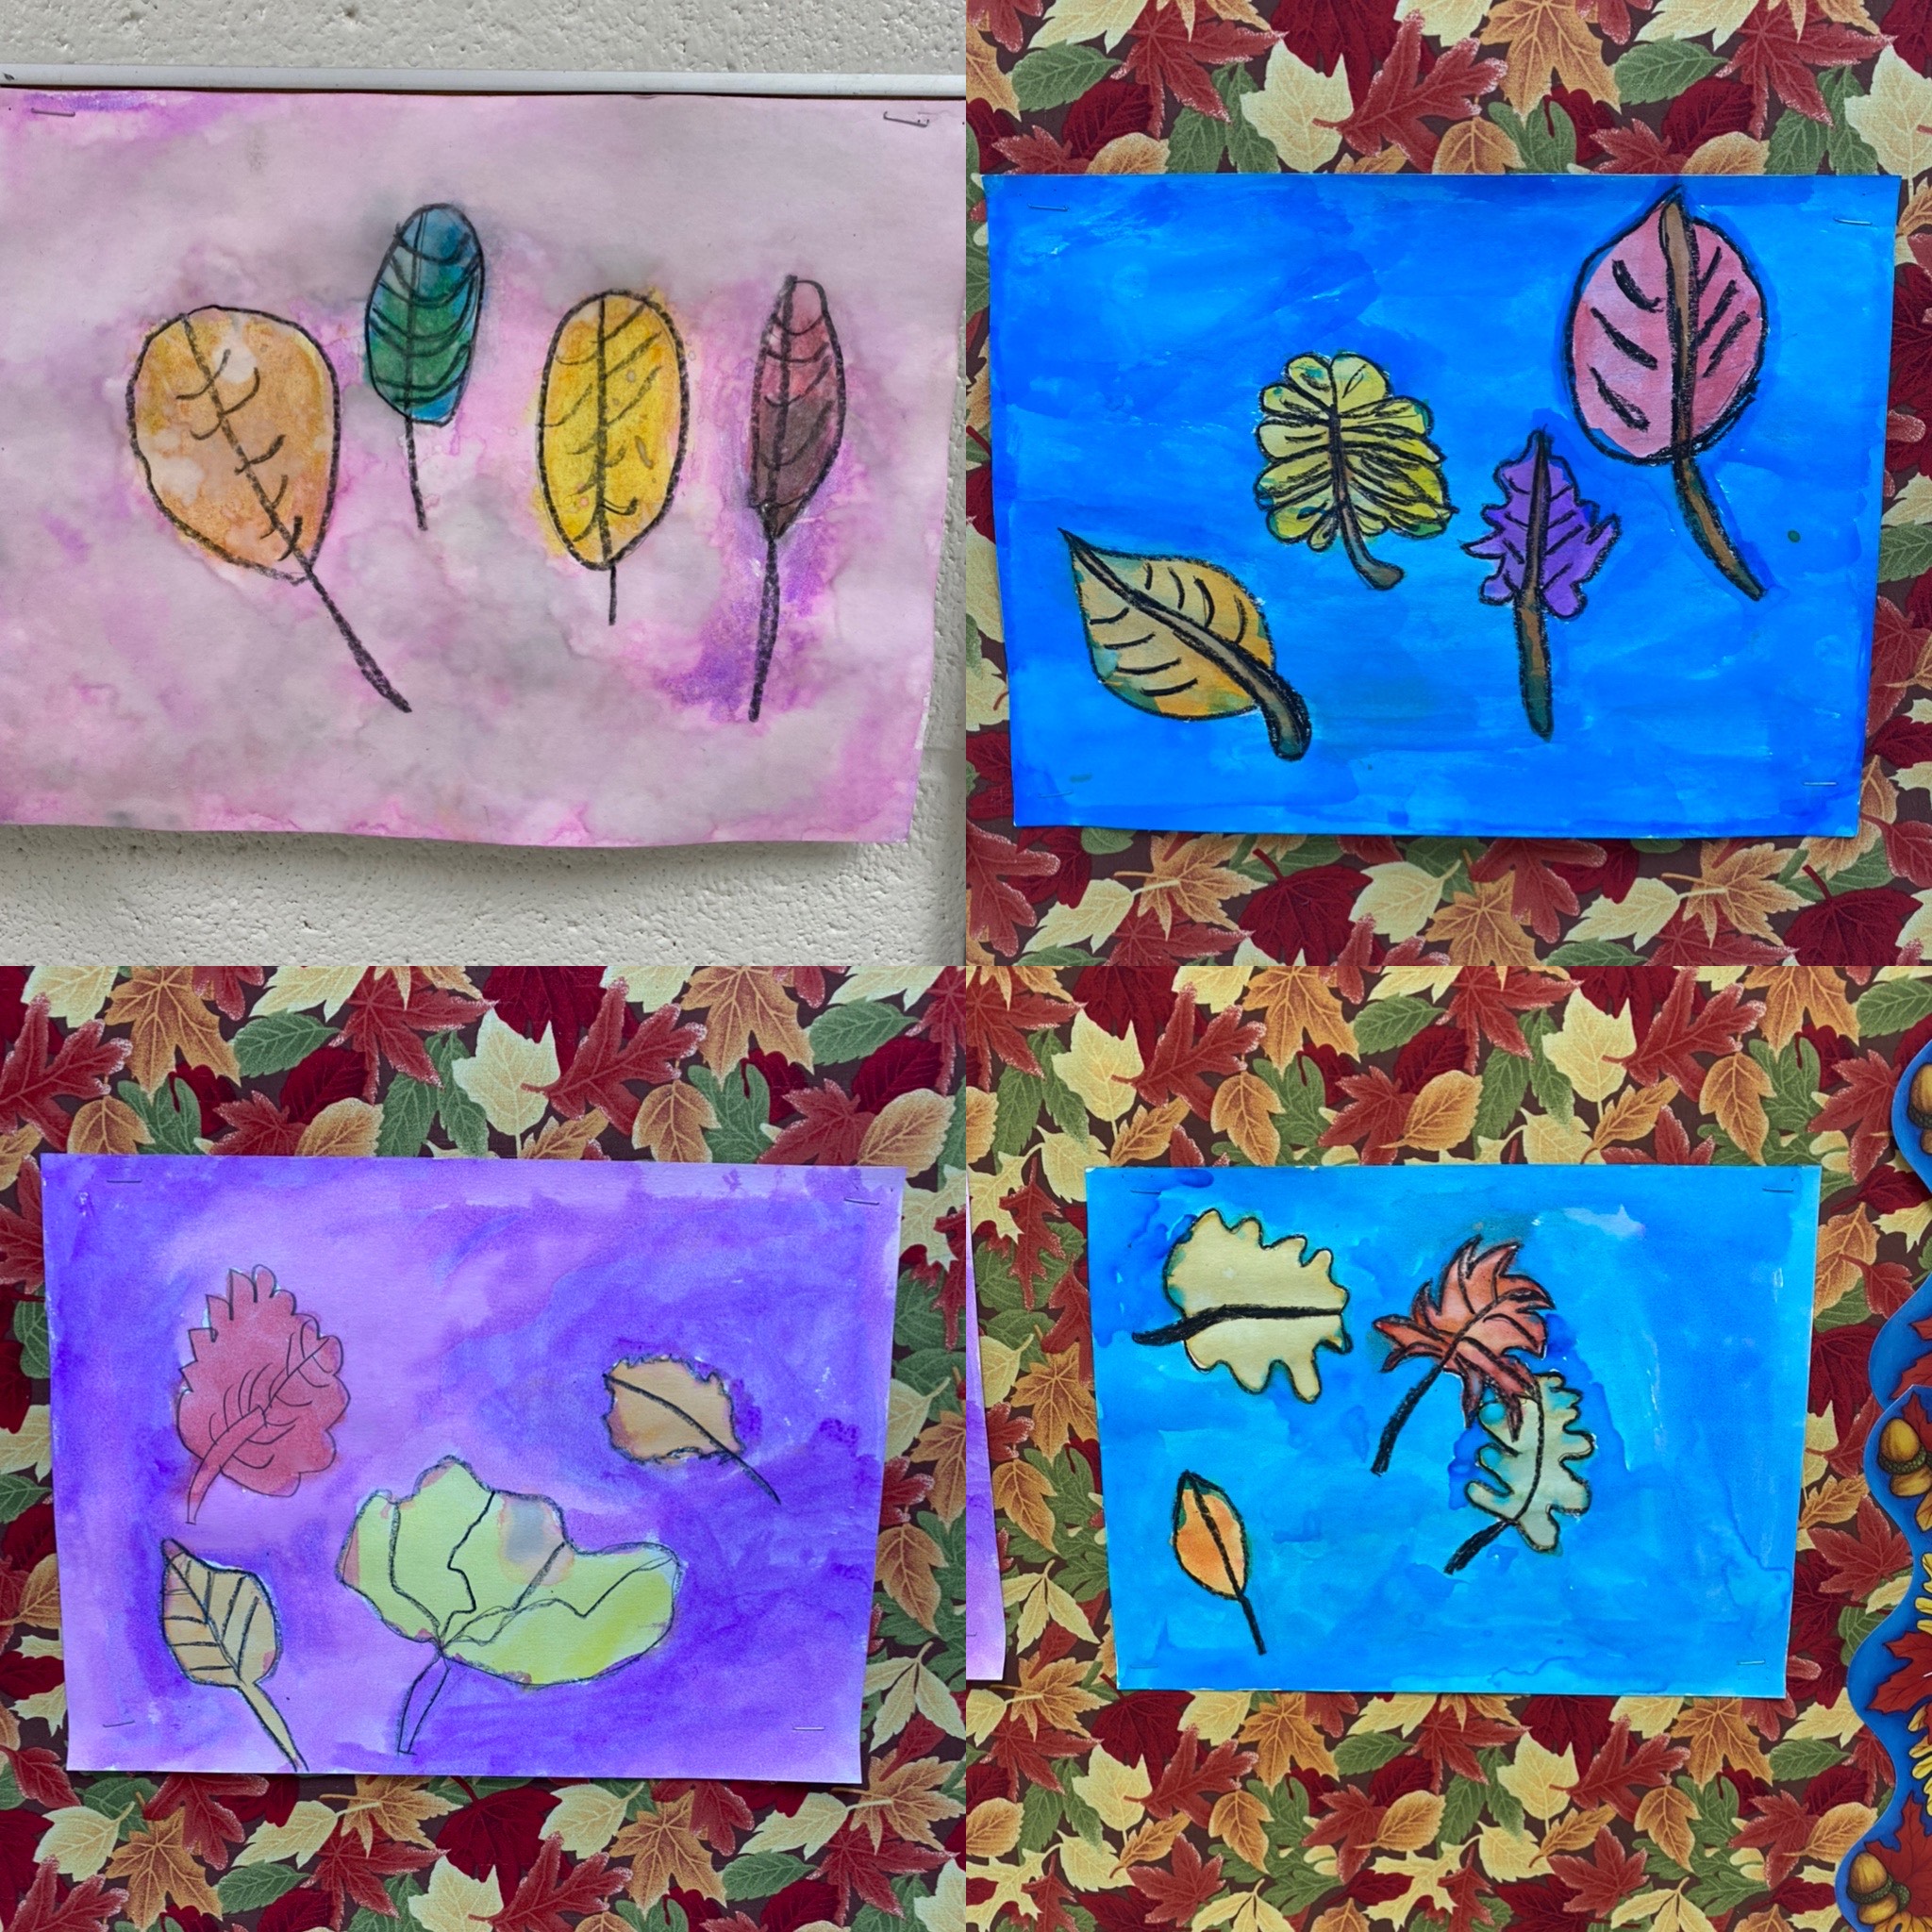 Autumn artwork - leaves using watercolors